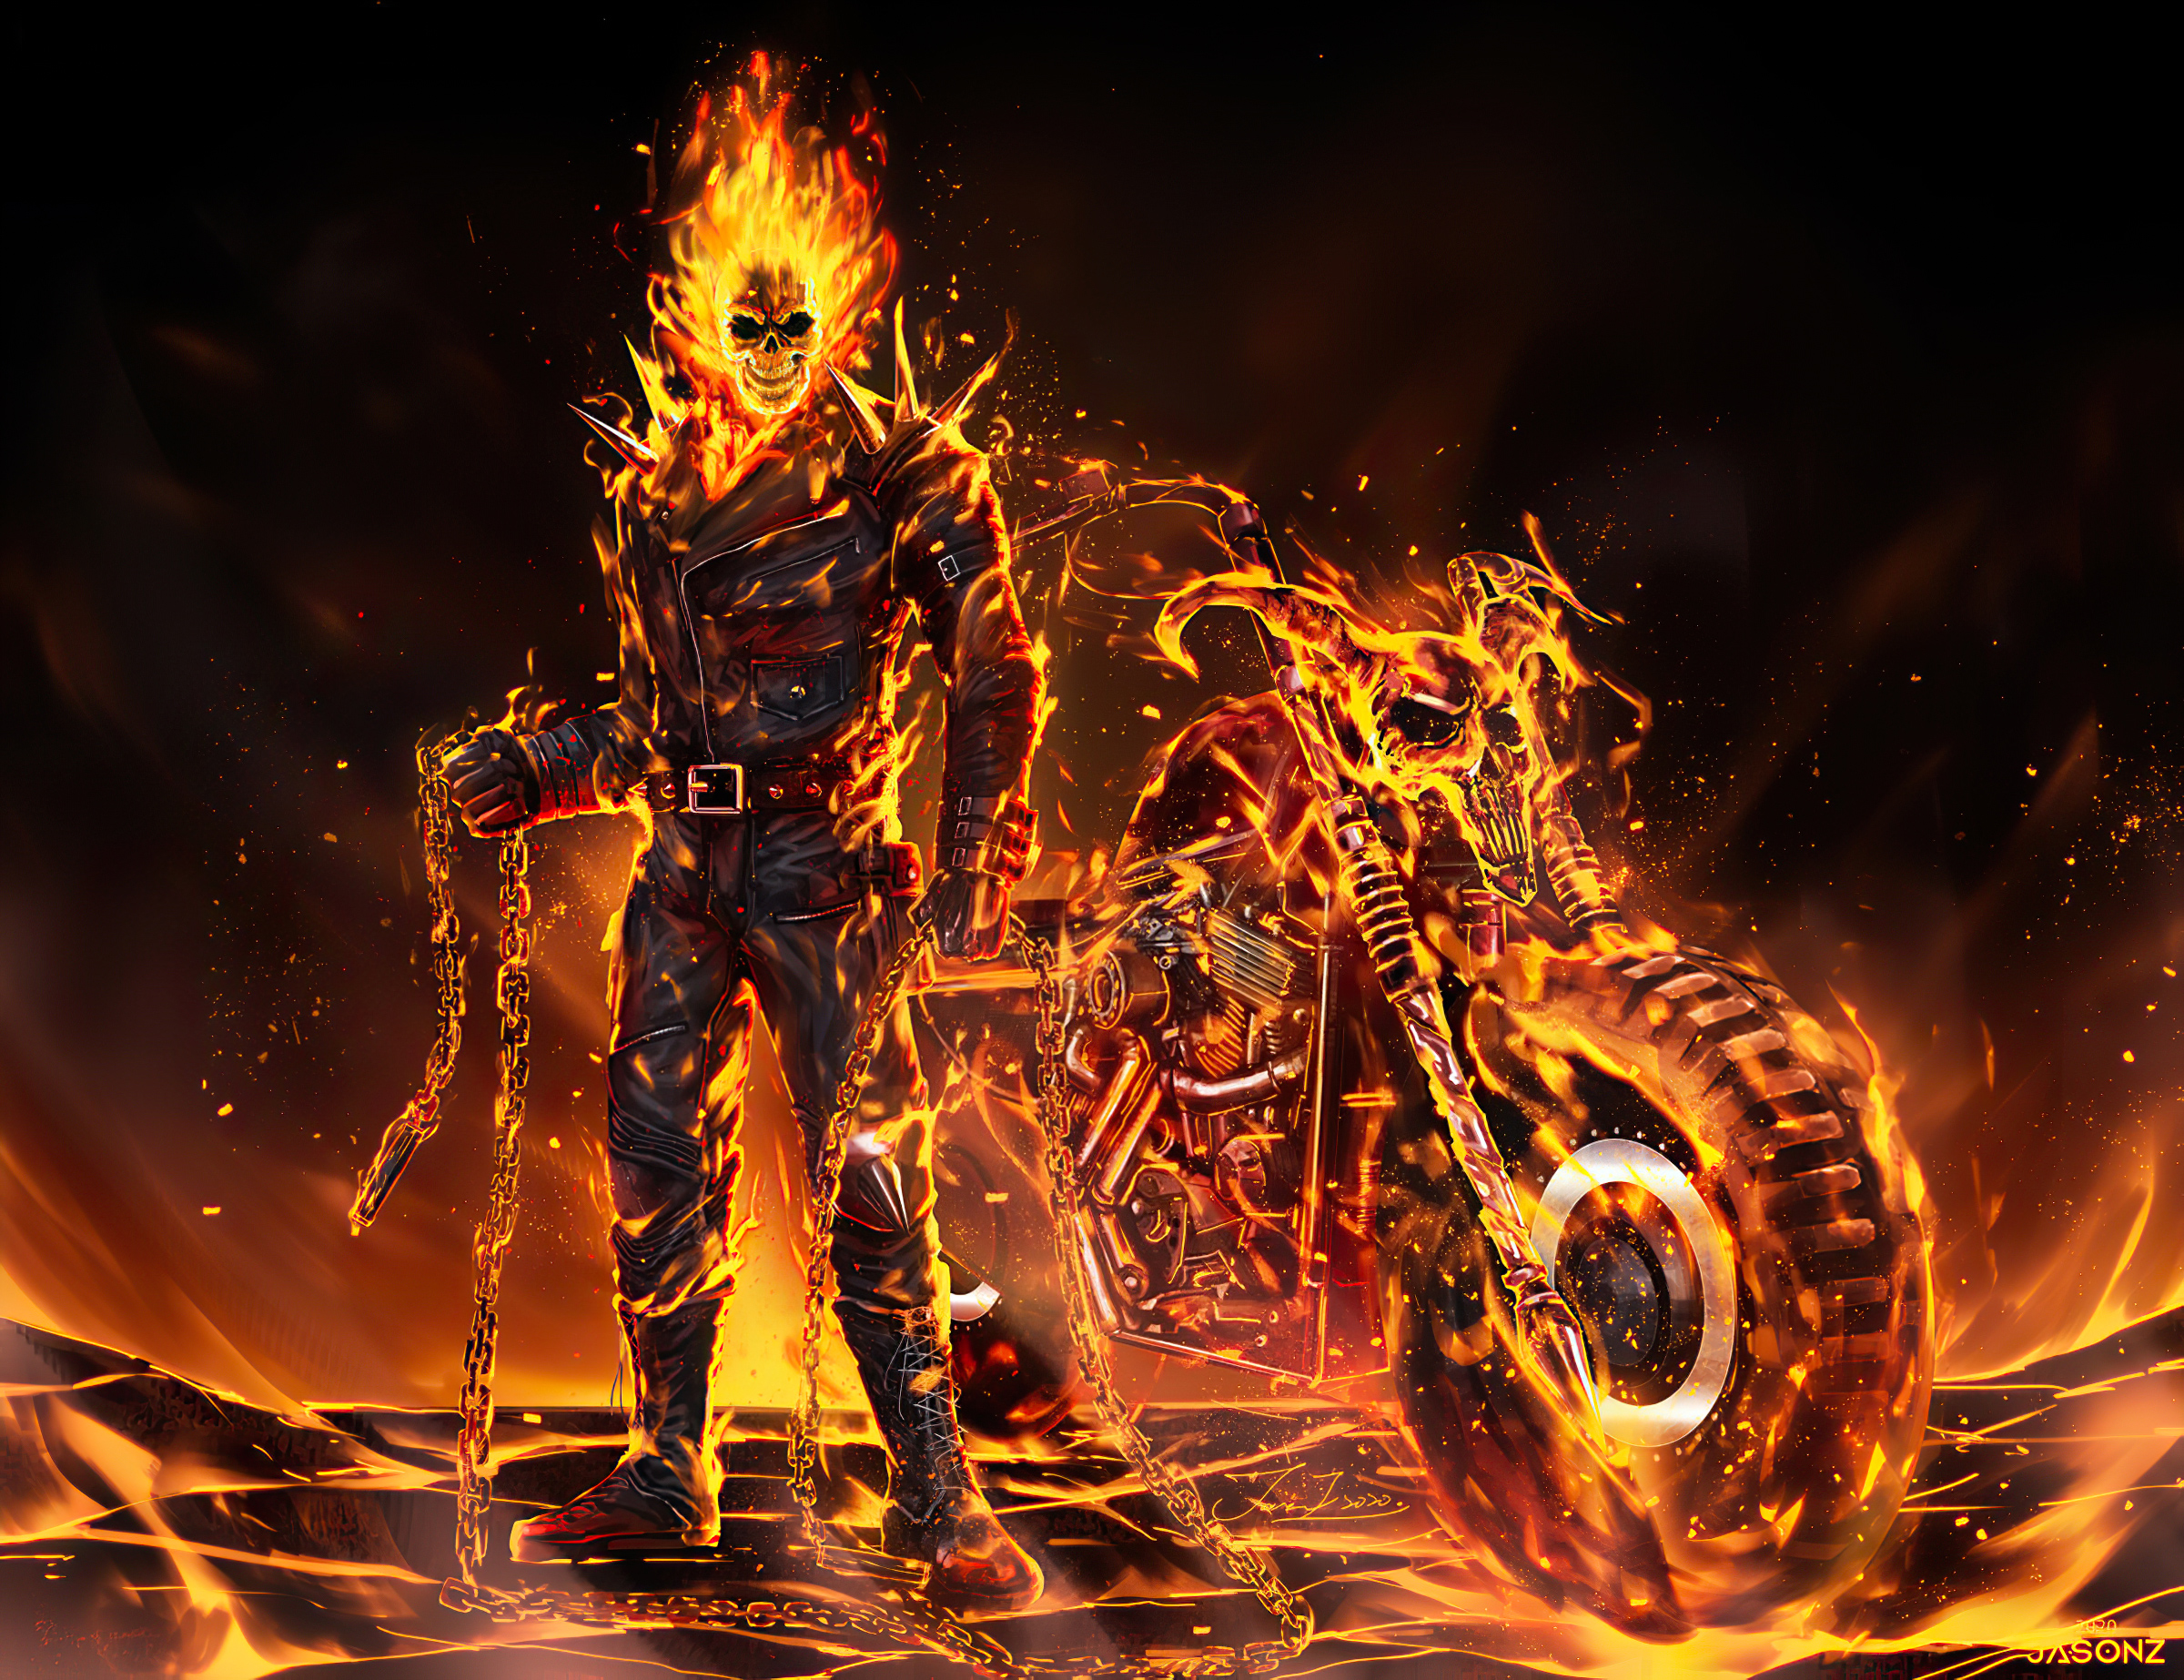 General 2400x1846 fan art digital art artwork digital painting Ghost Rider fire Harley-Davidson skull face black jackets